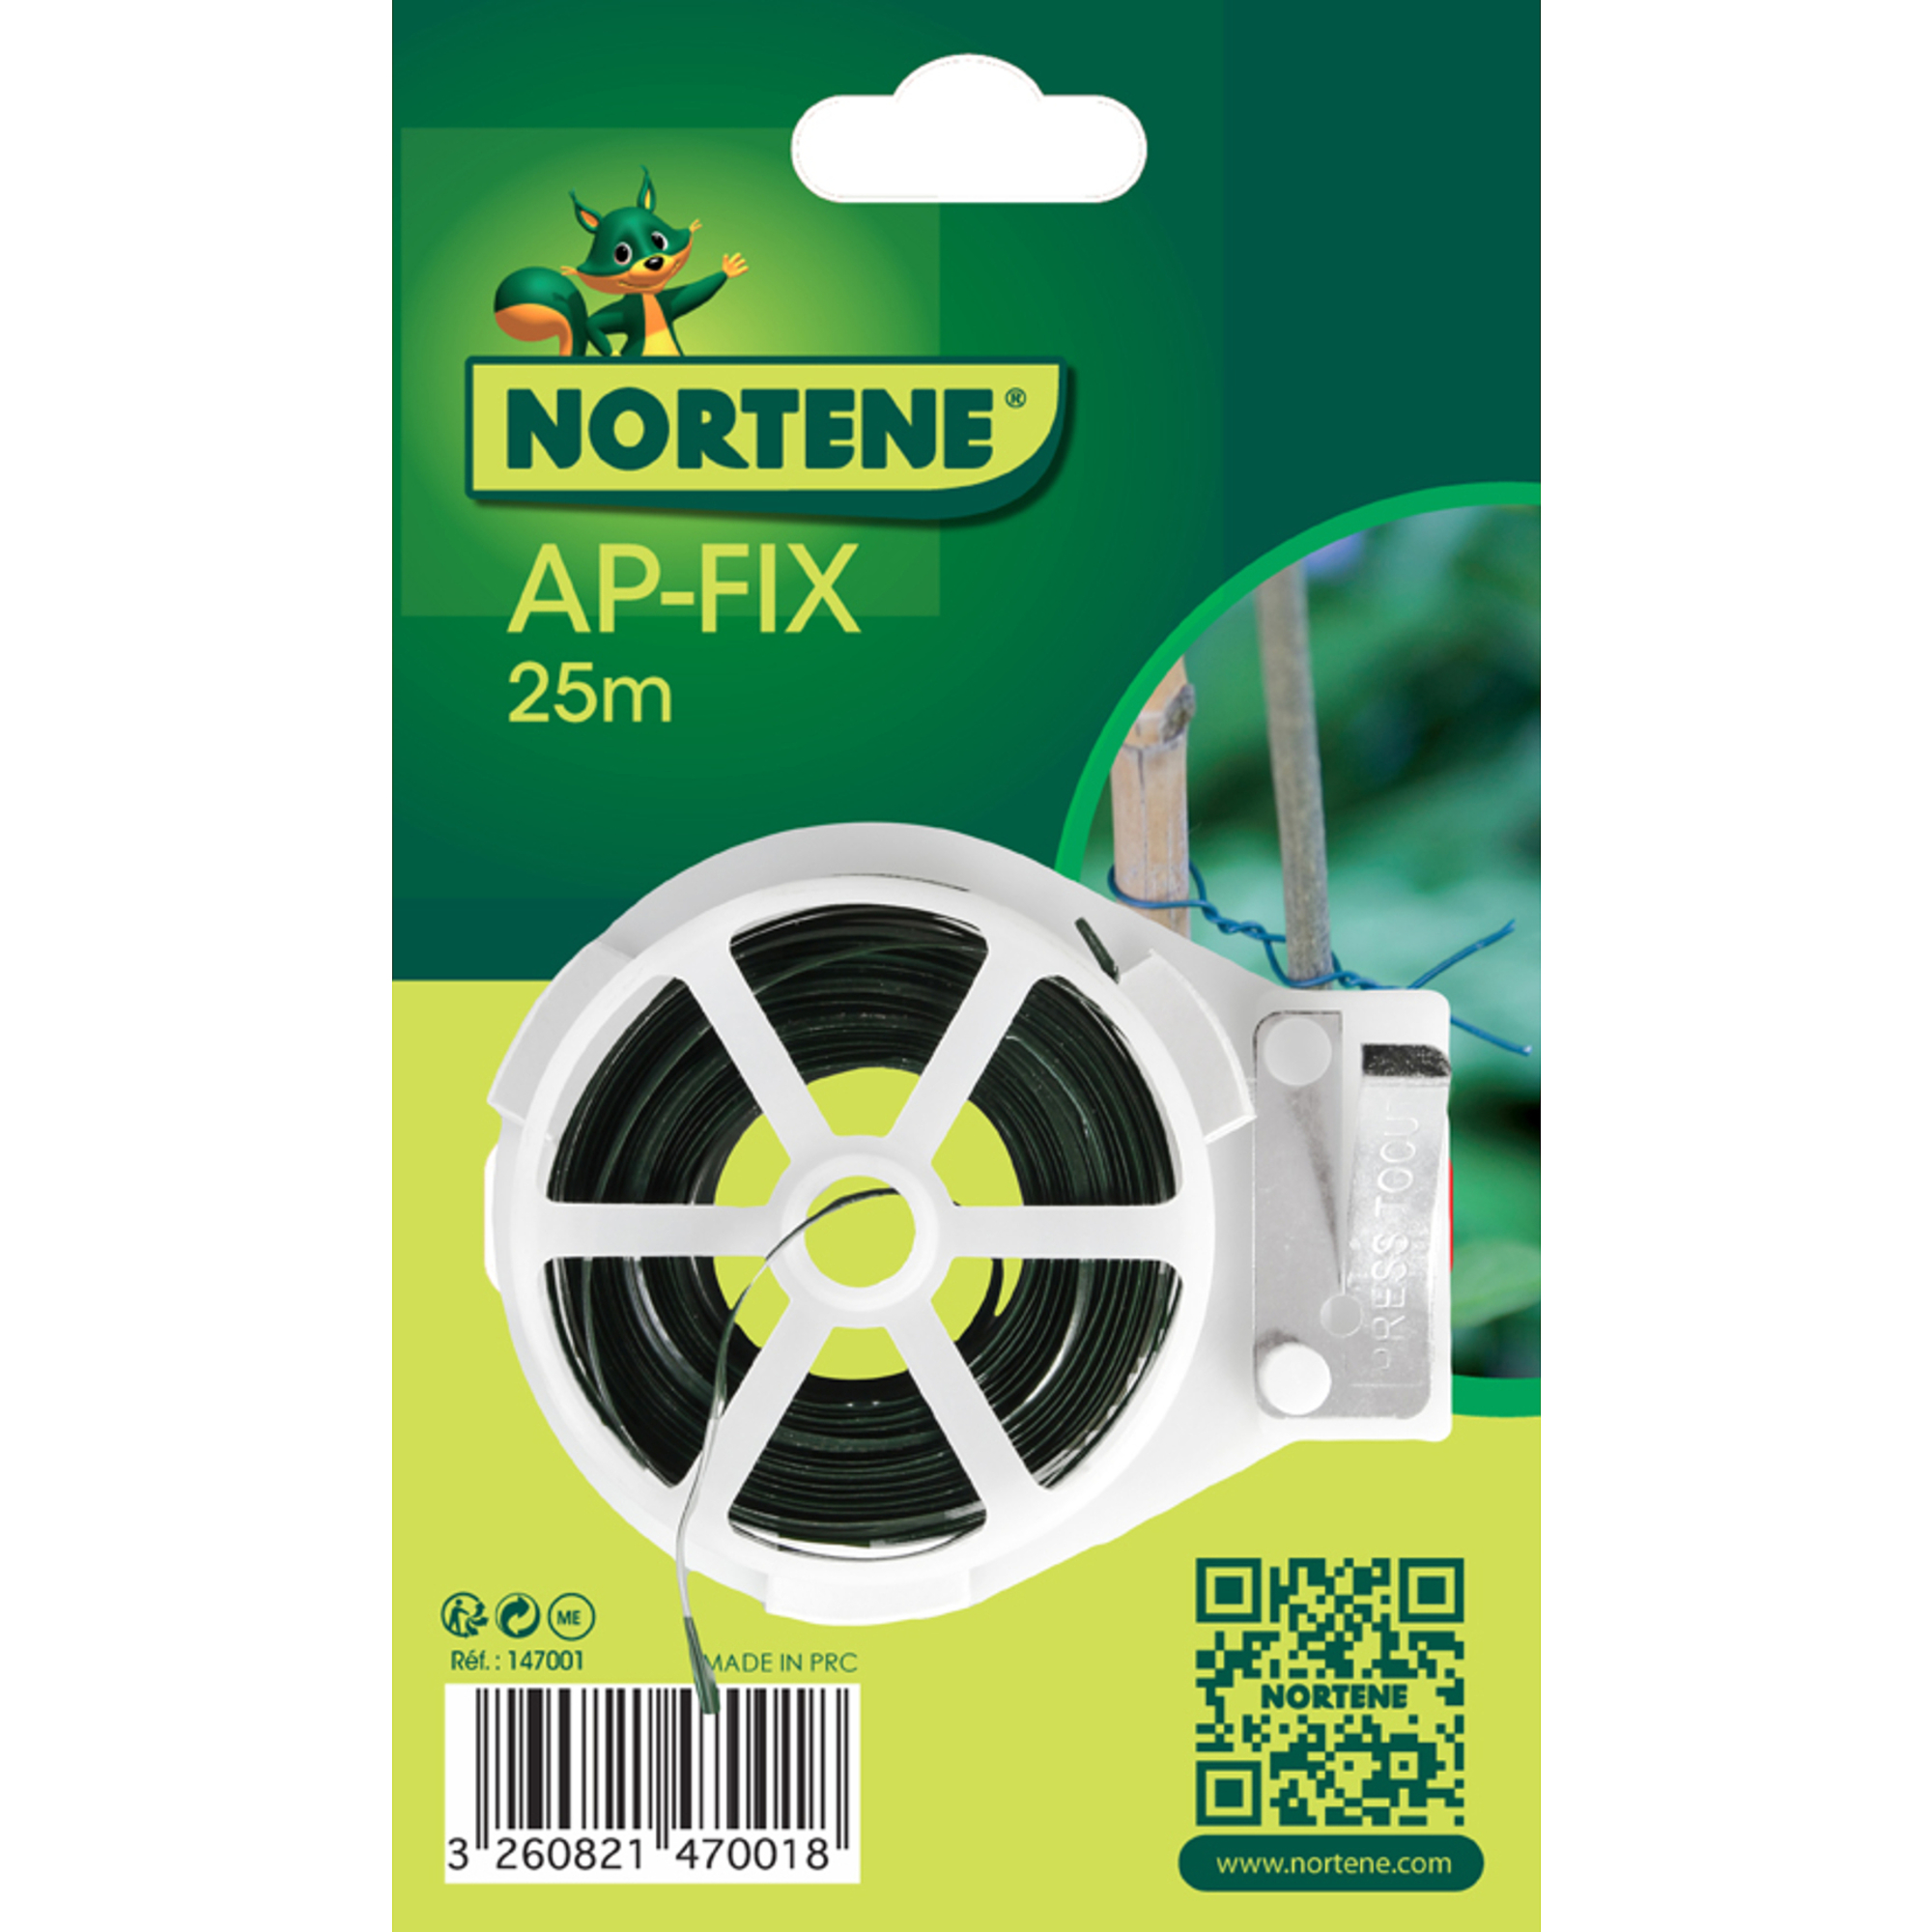 Nortene AP-FIX erősített műanyag kötöző - 2 mm x 25 m  -  zöld - 147001